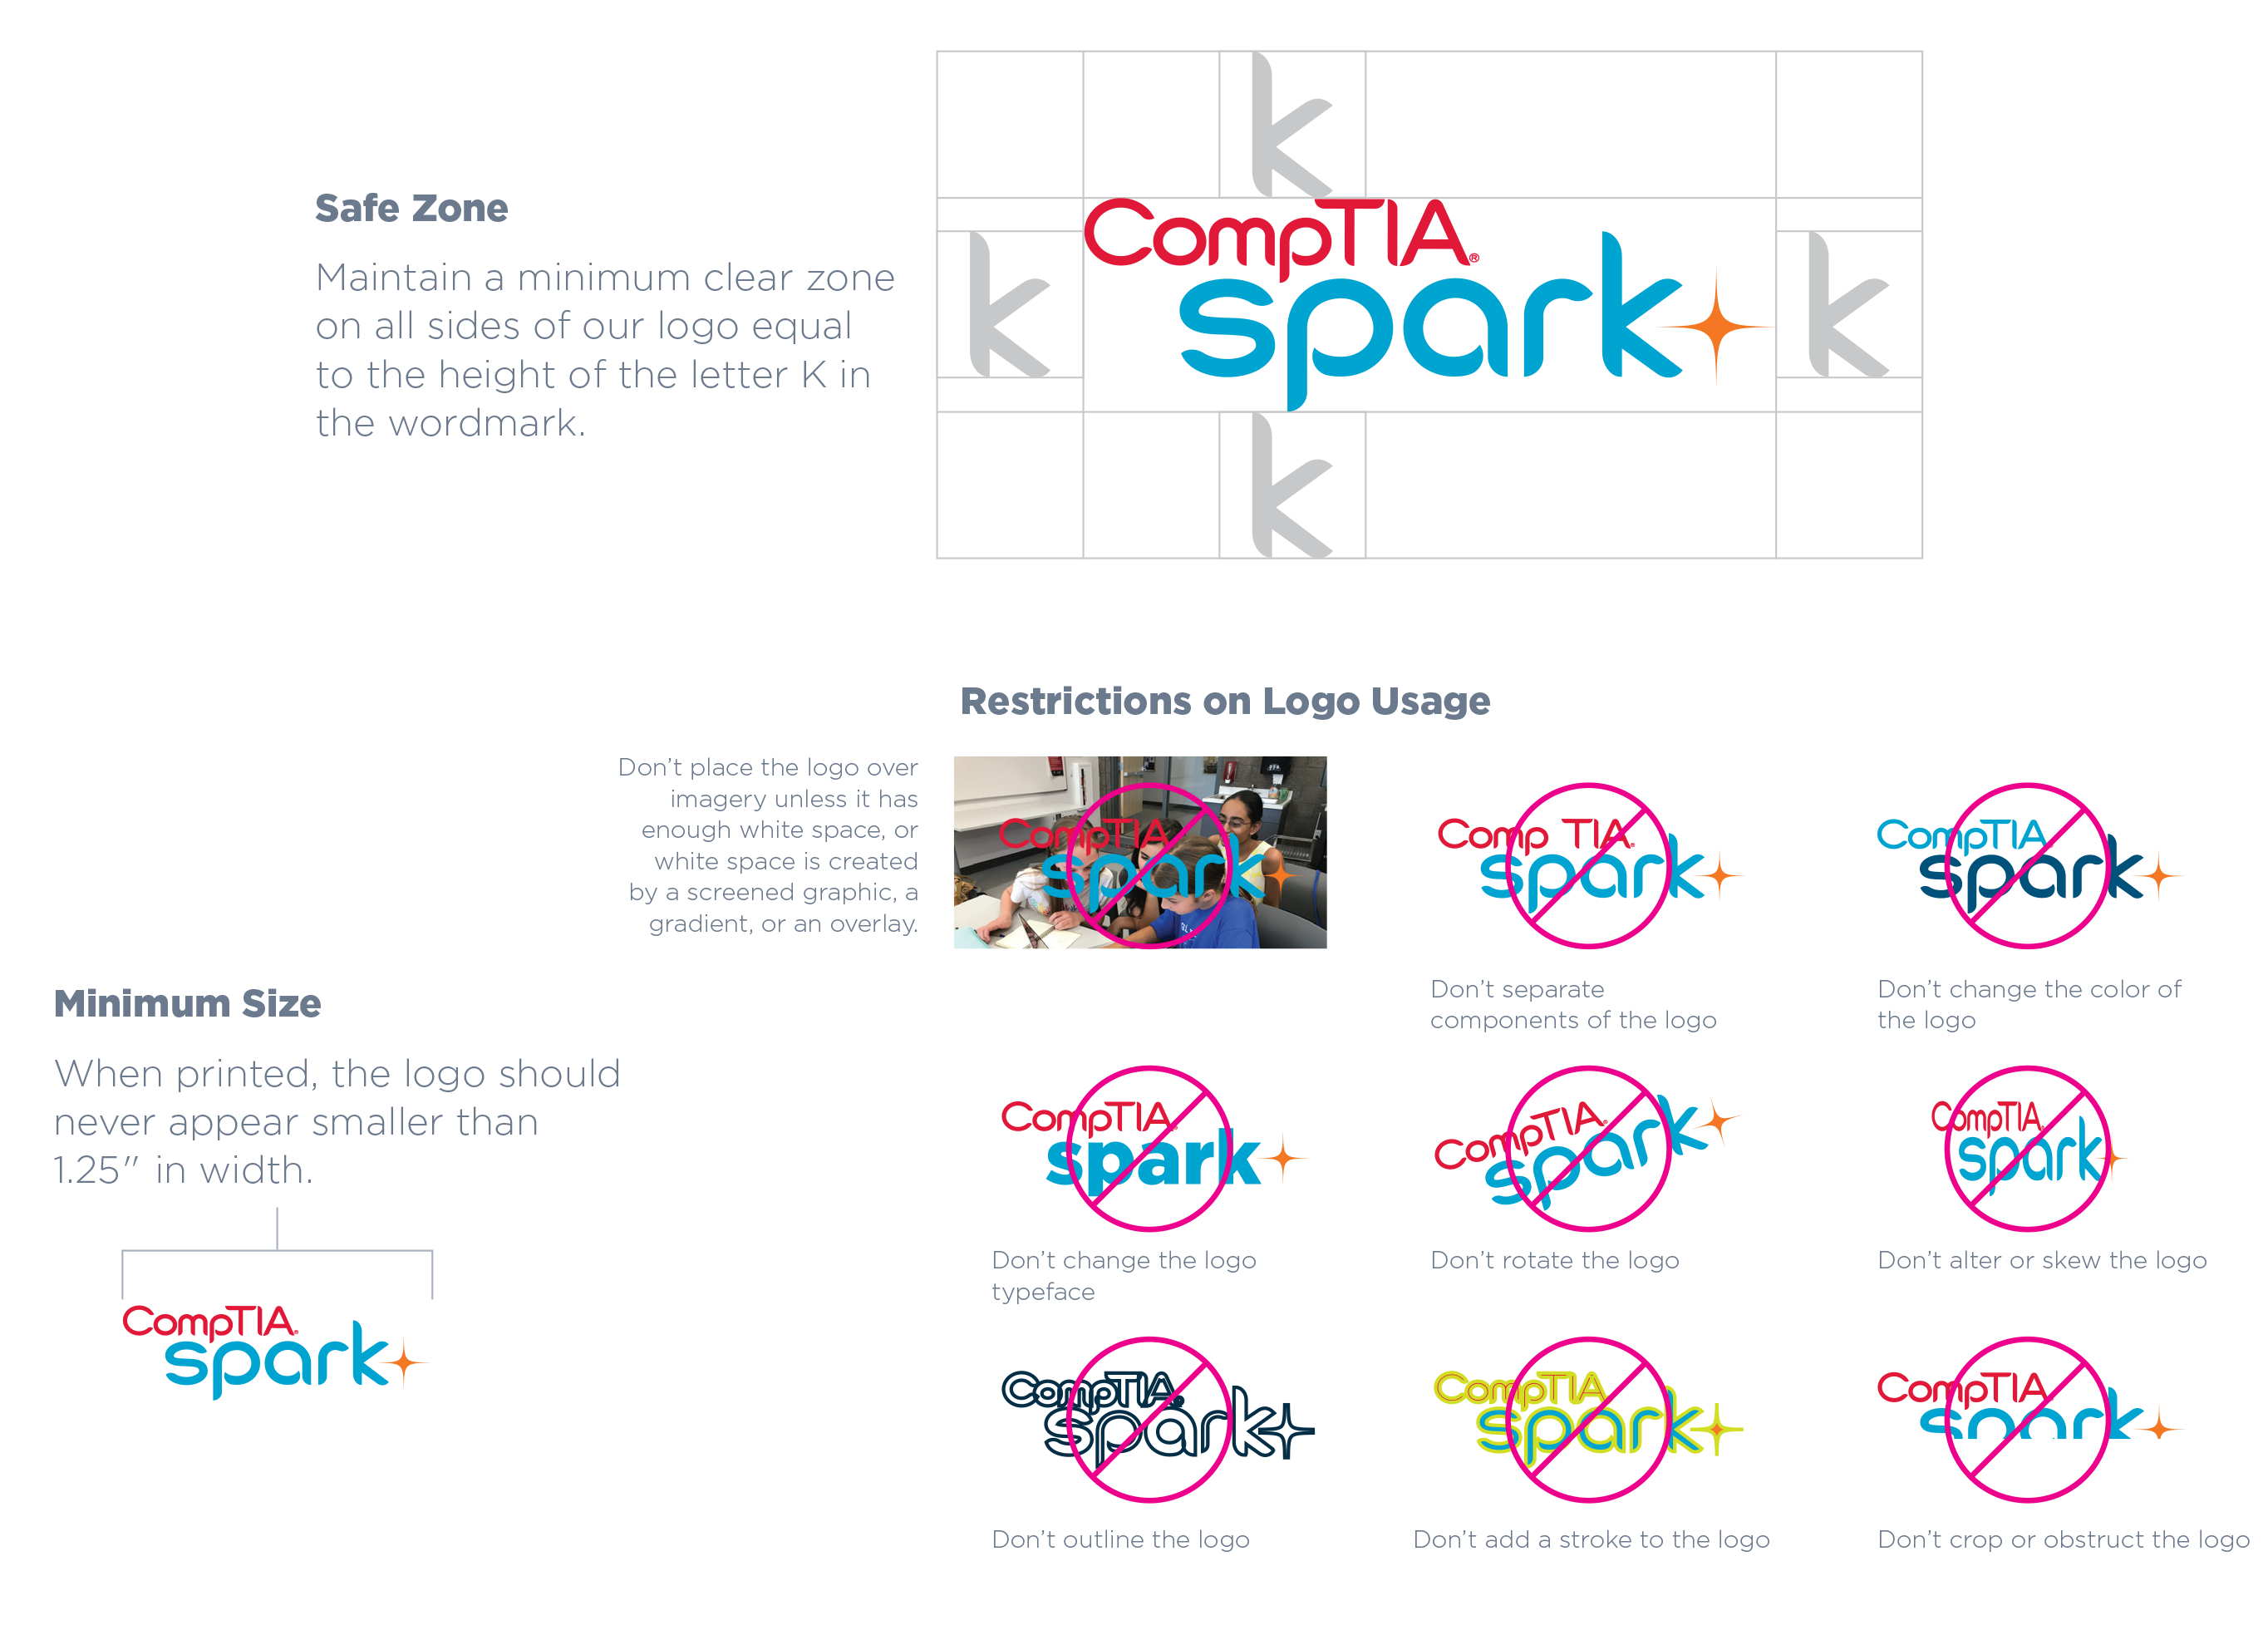 CompTIA-Spark-Brand_logo usage